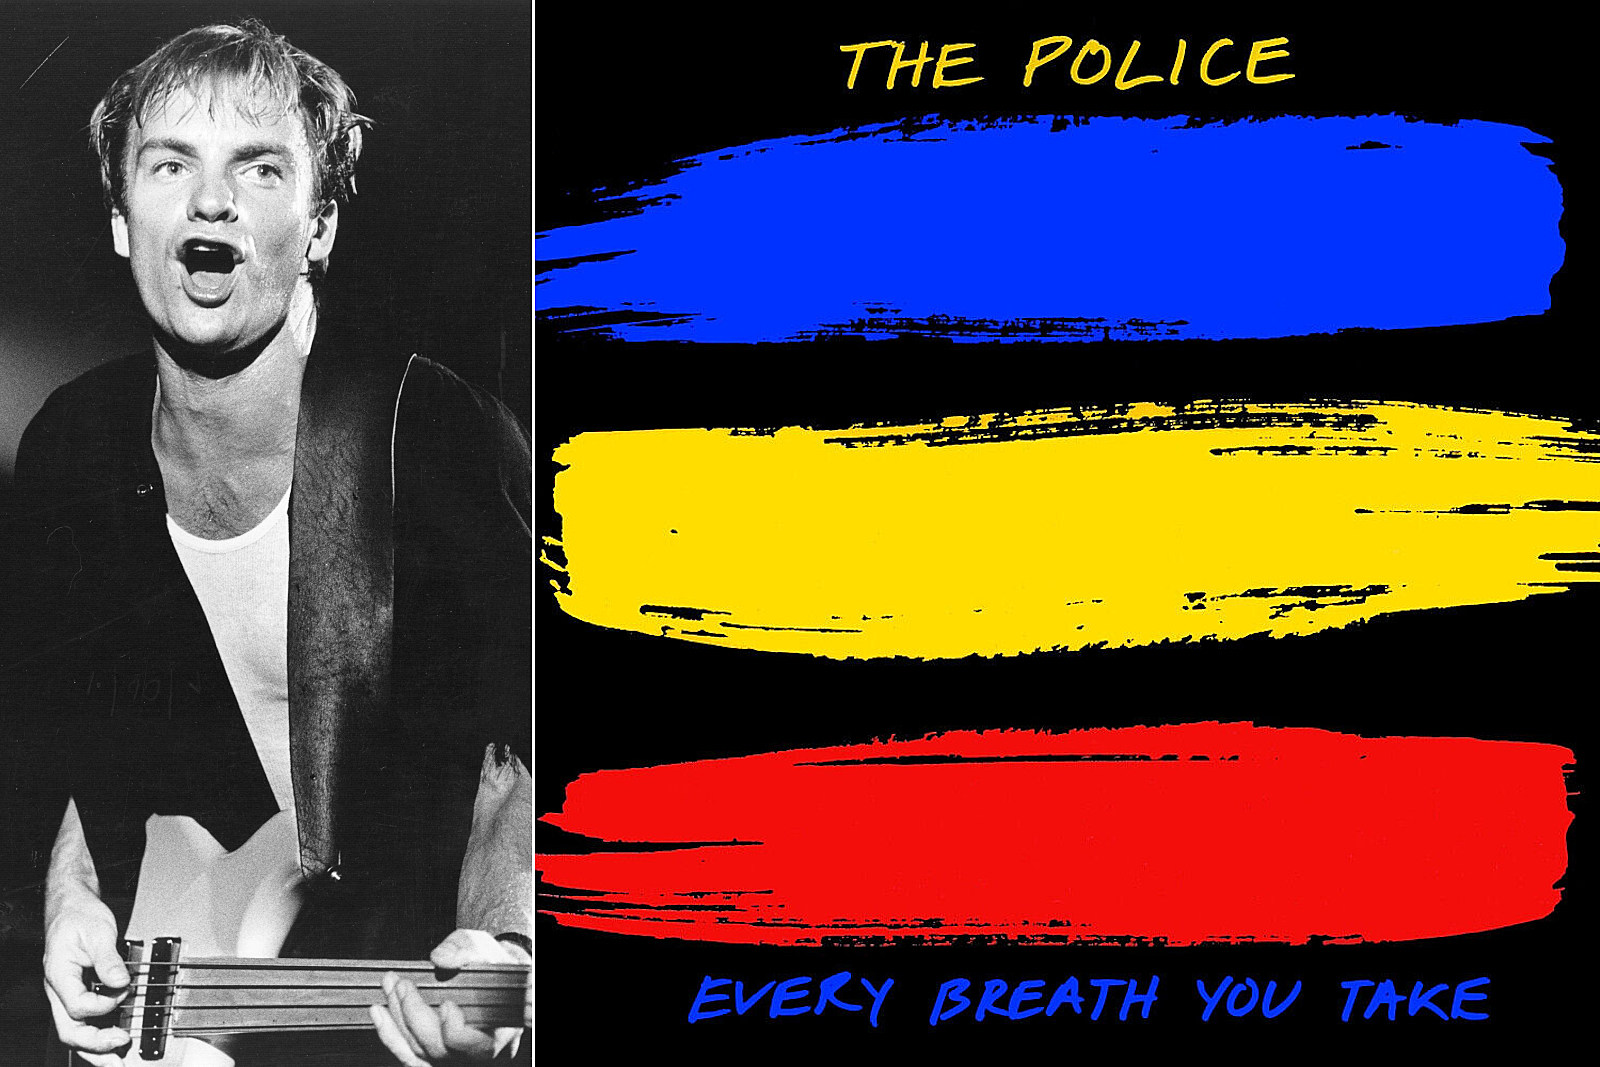 EVERY BREATH YOU TAKE (TRADUÇÃO) - The Police 